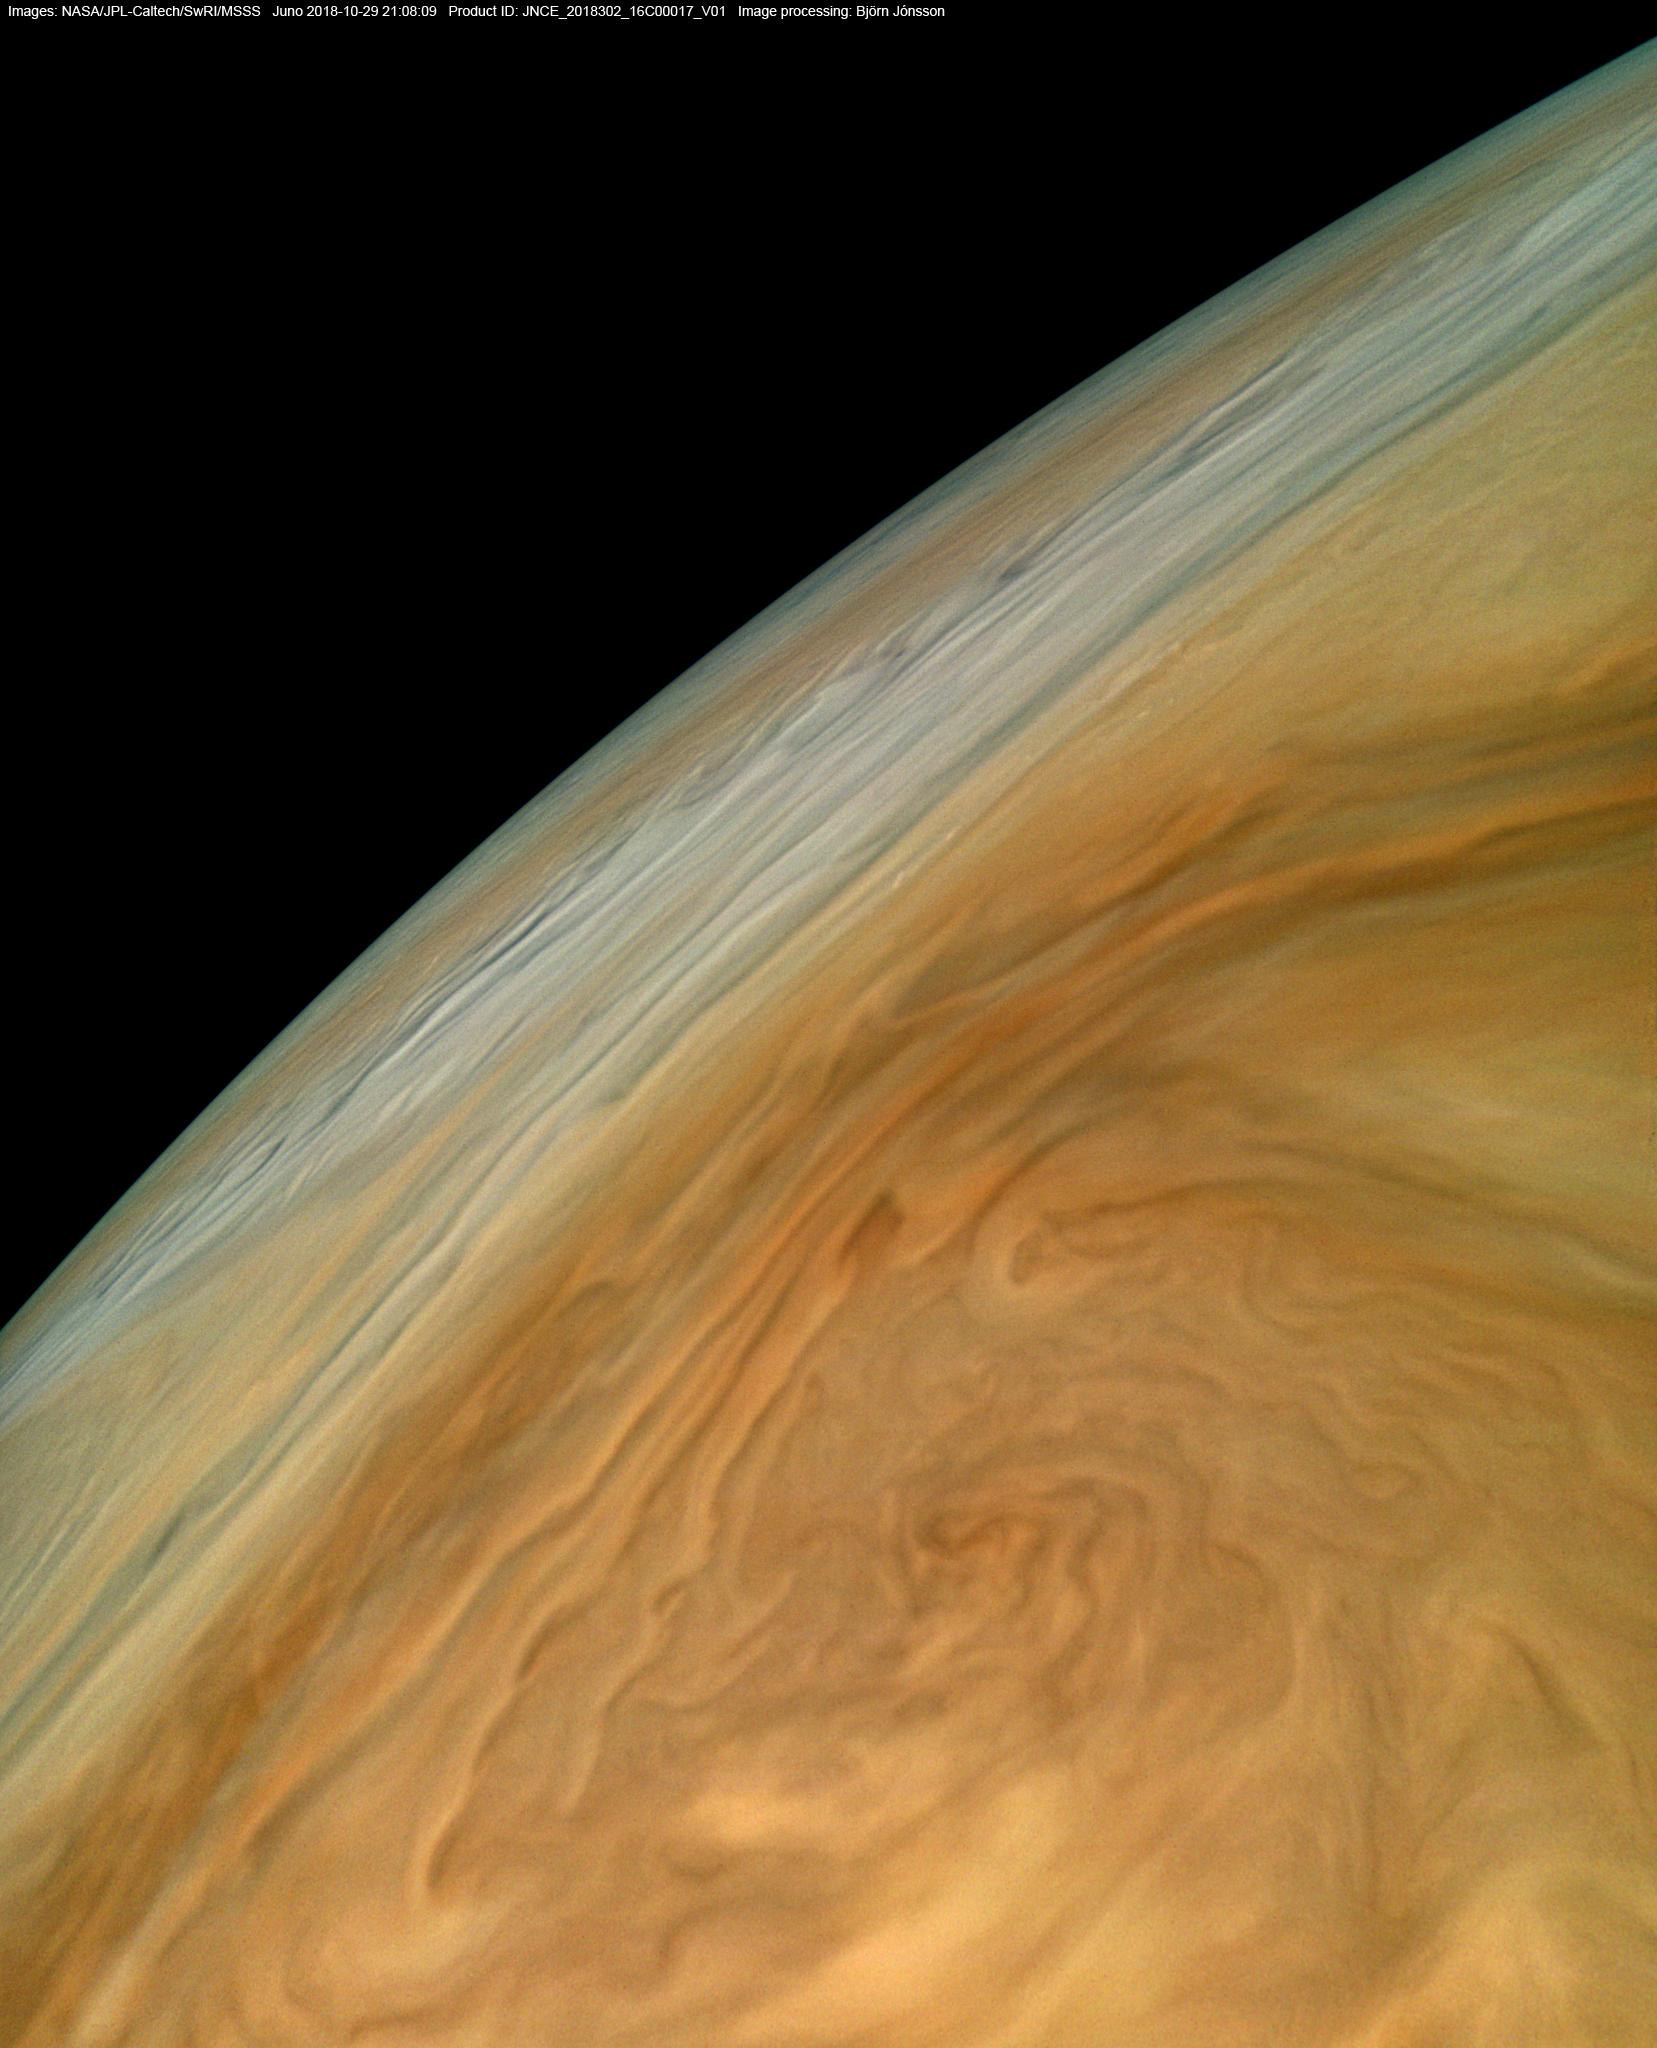 Jupiter's North Equatorial Belt